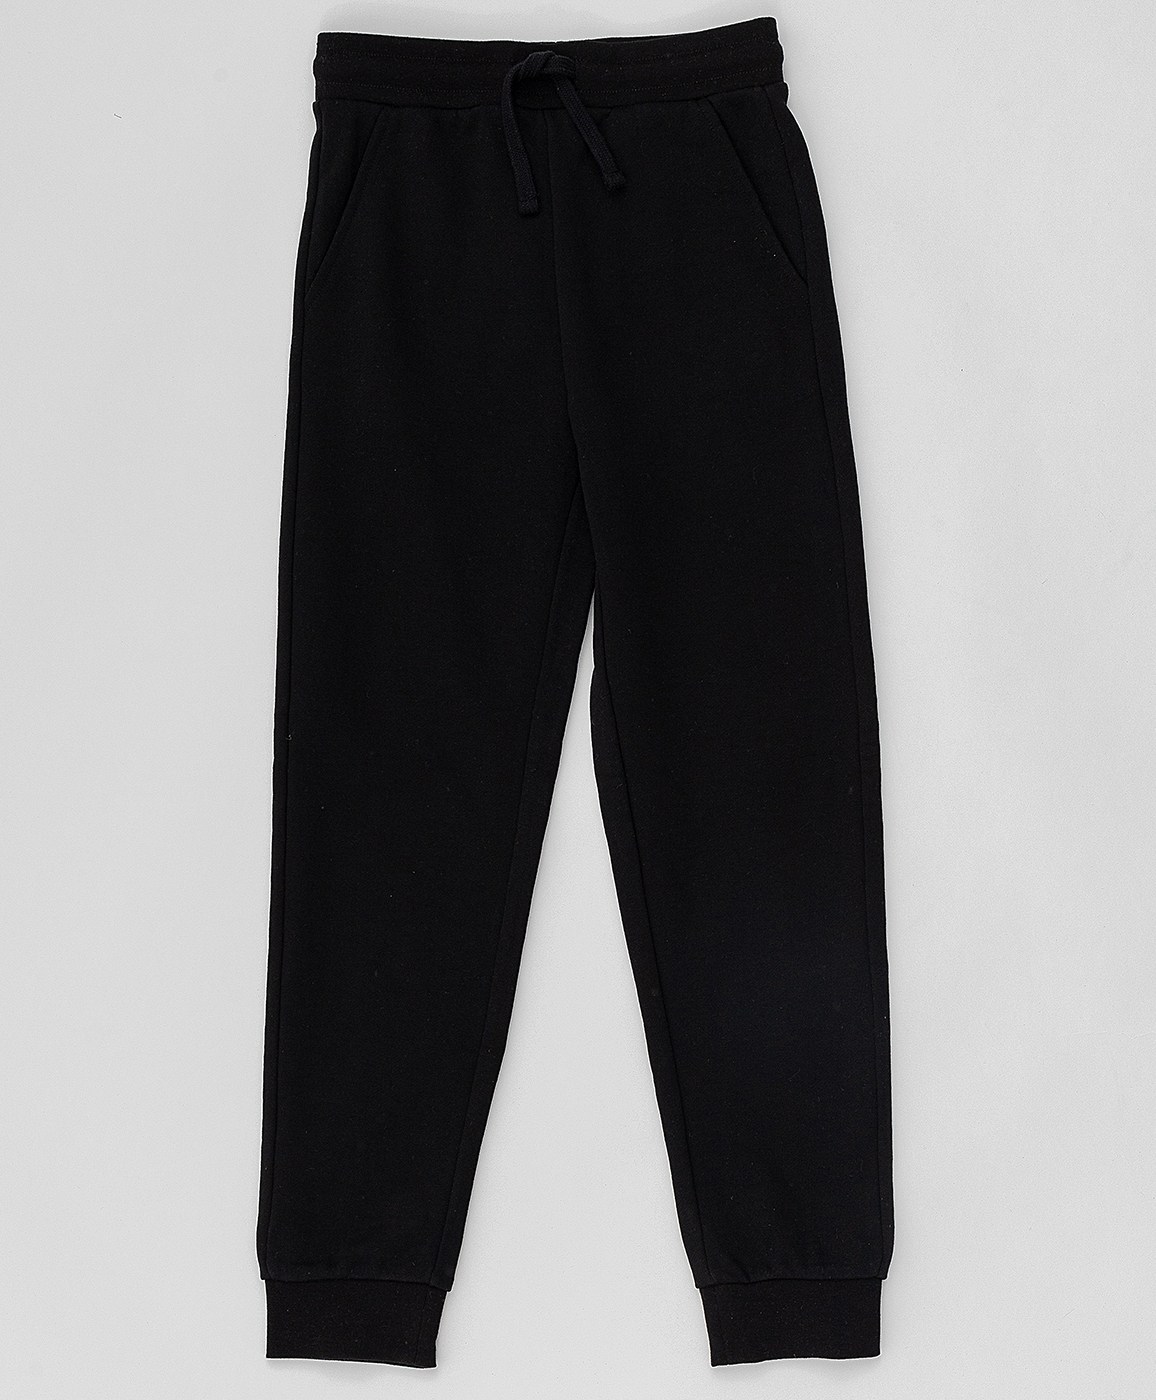 Черные брюки из футера Button Blue 220BBBMC56010800, размер 128, цвет черный на резинке - фото 1